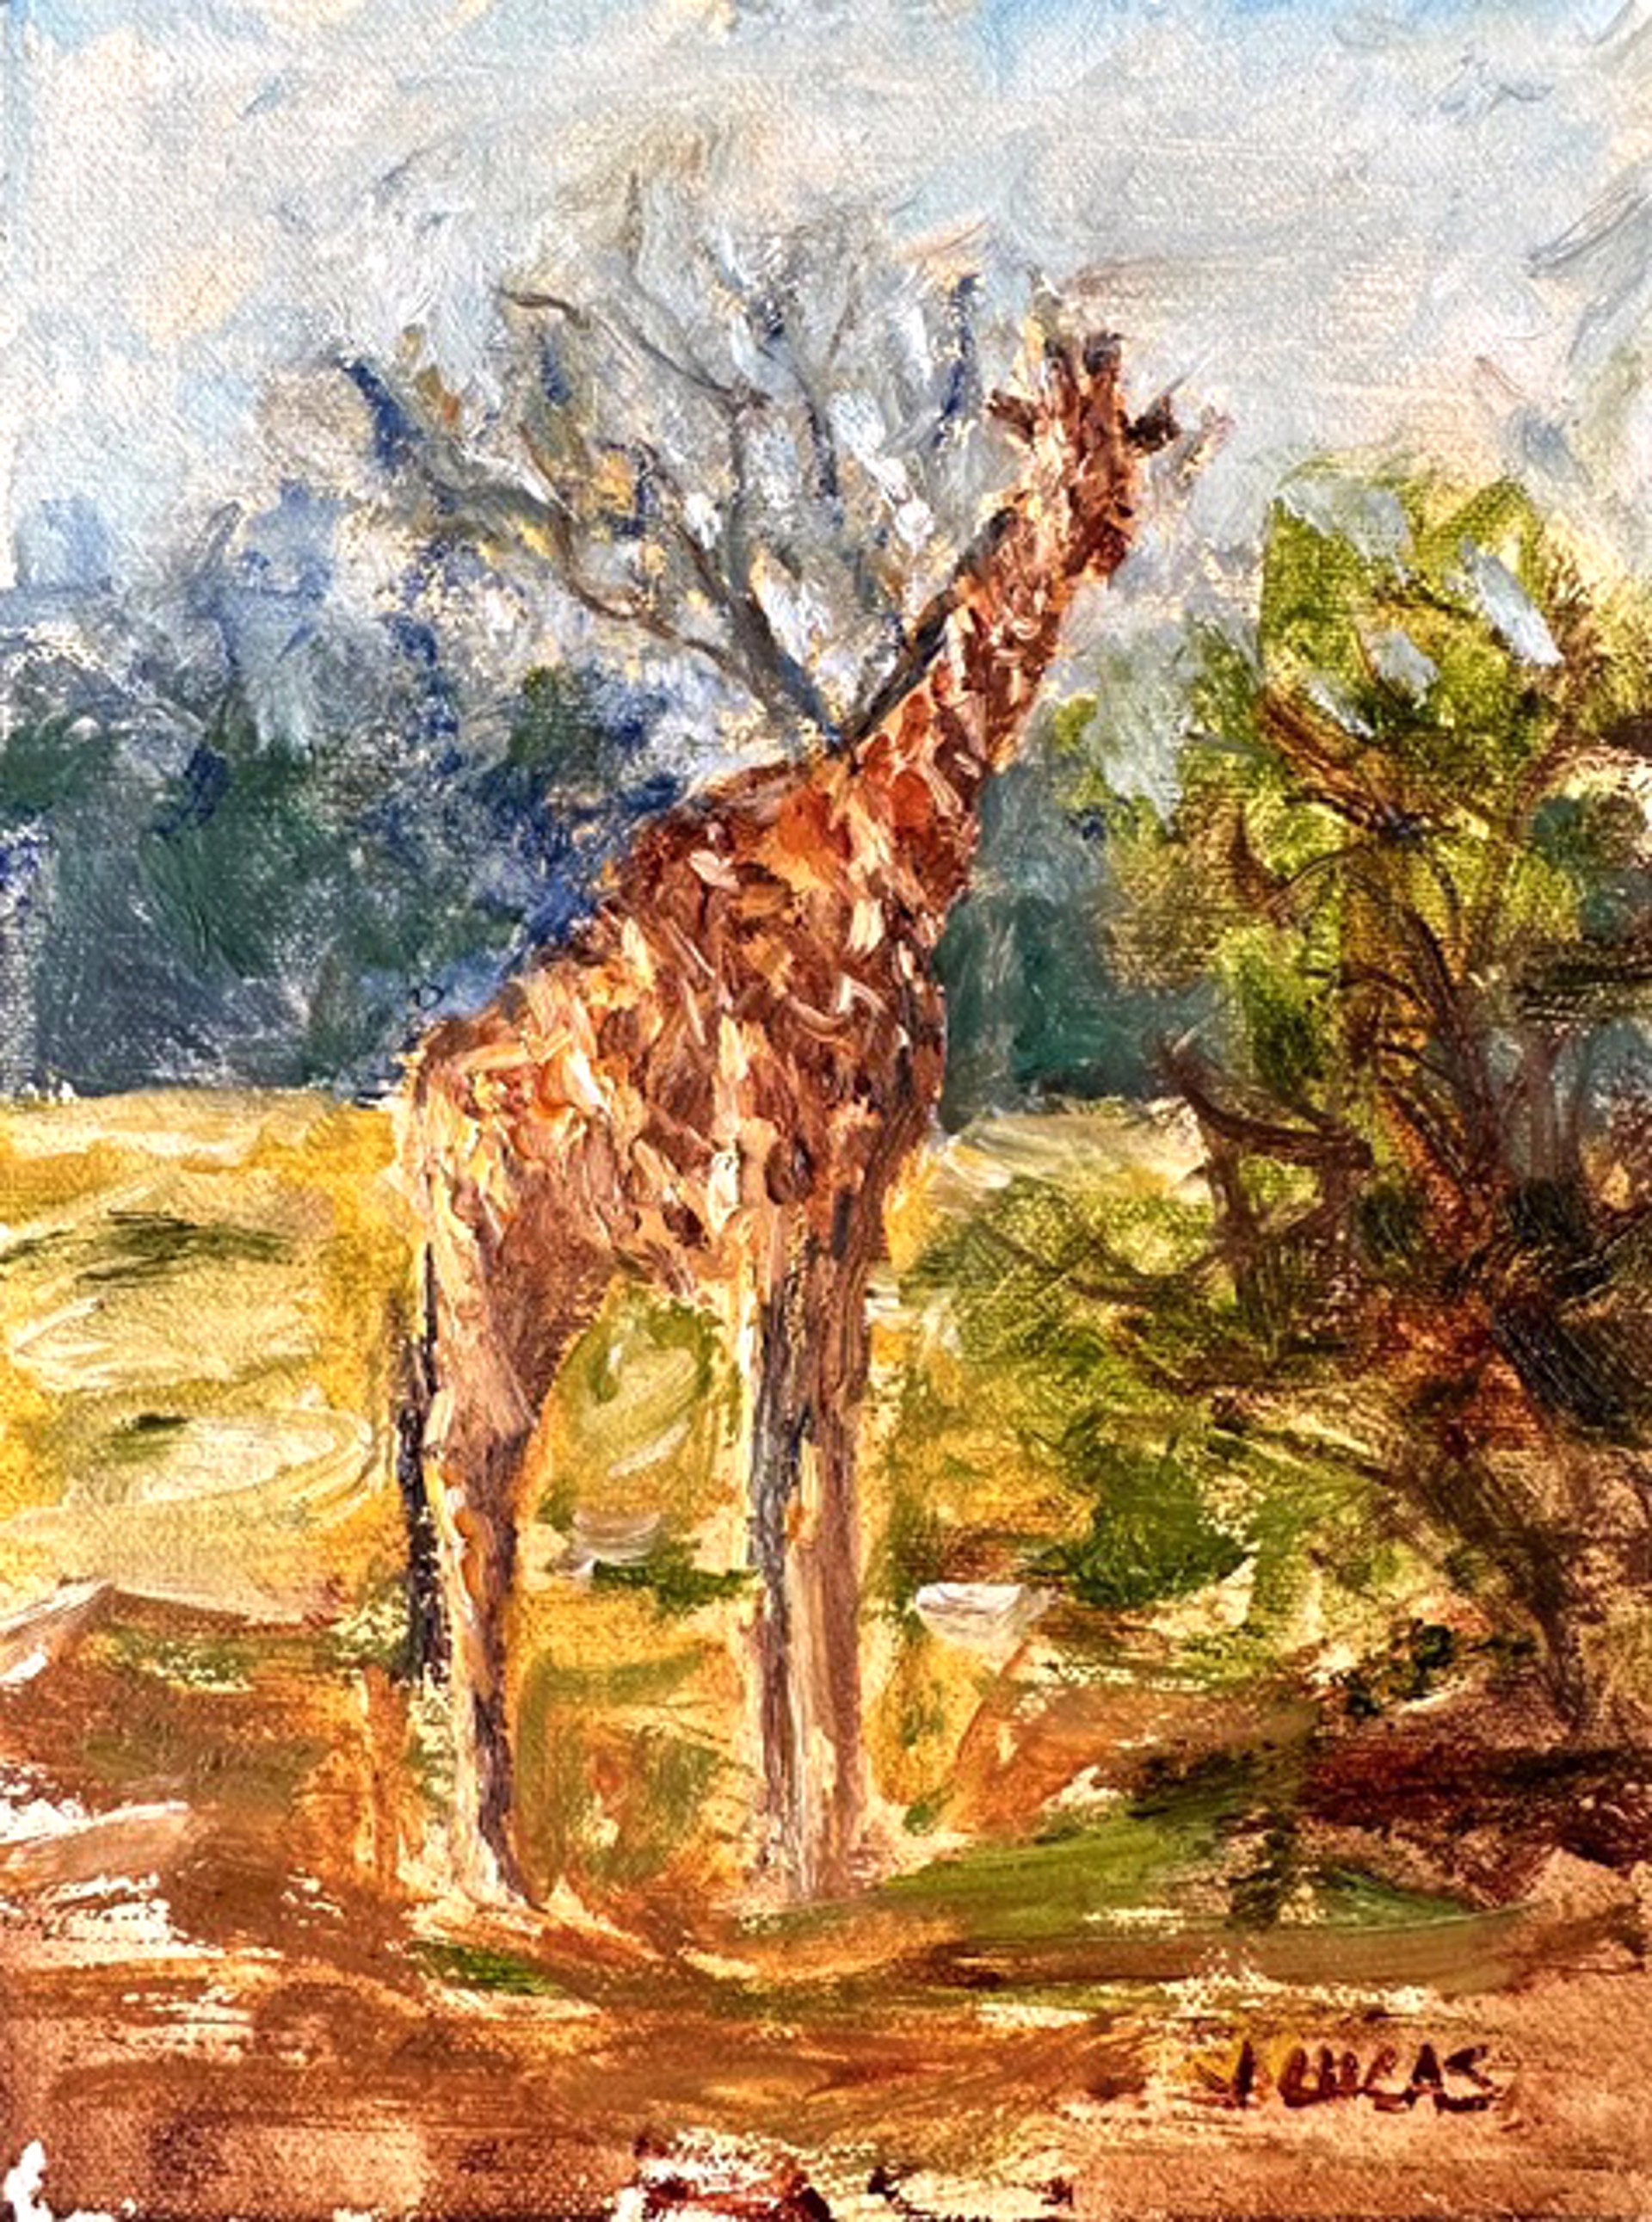 Giraffe by Janet Lucas Beck